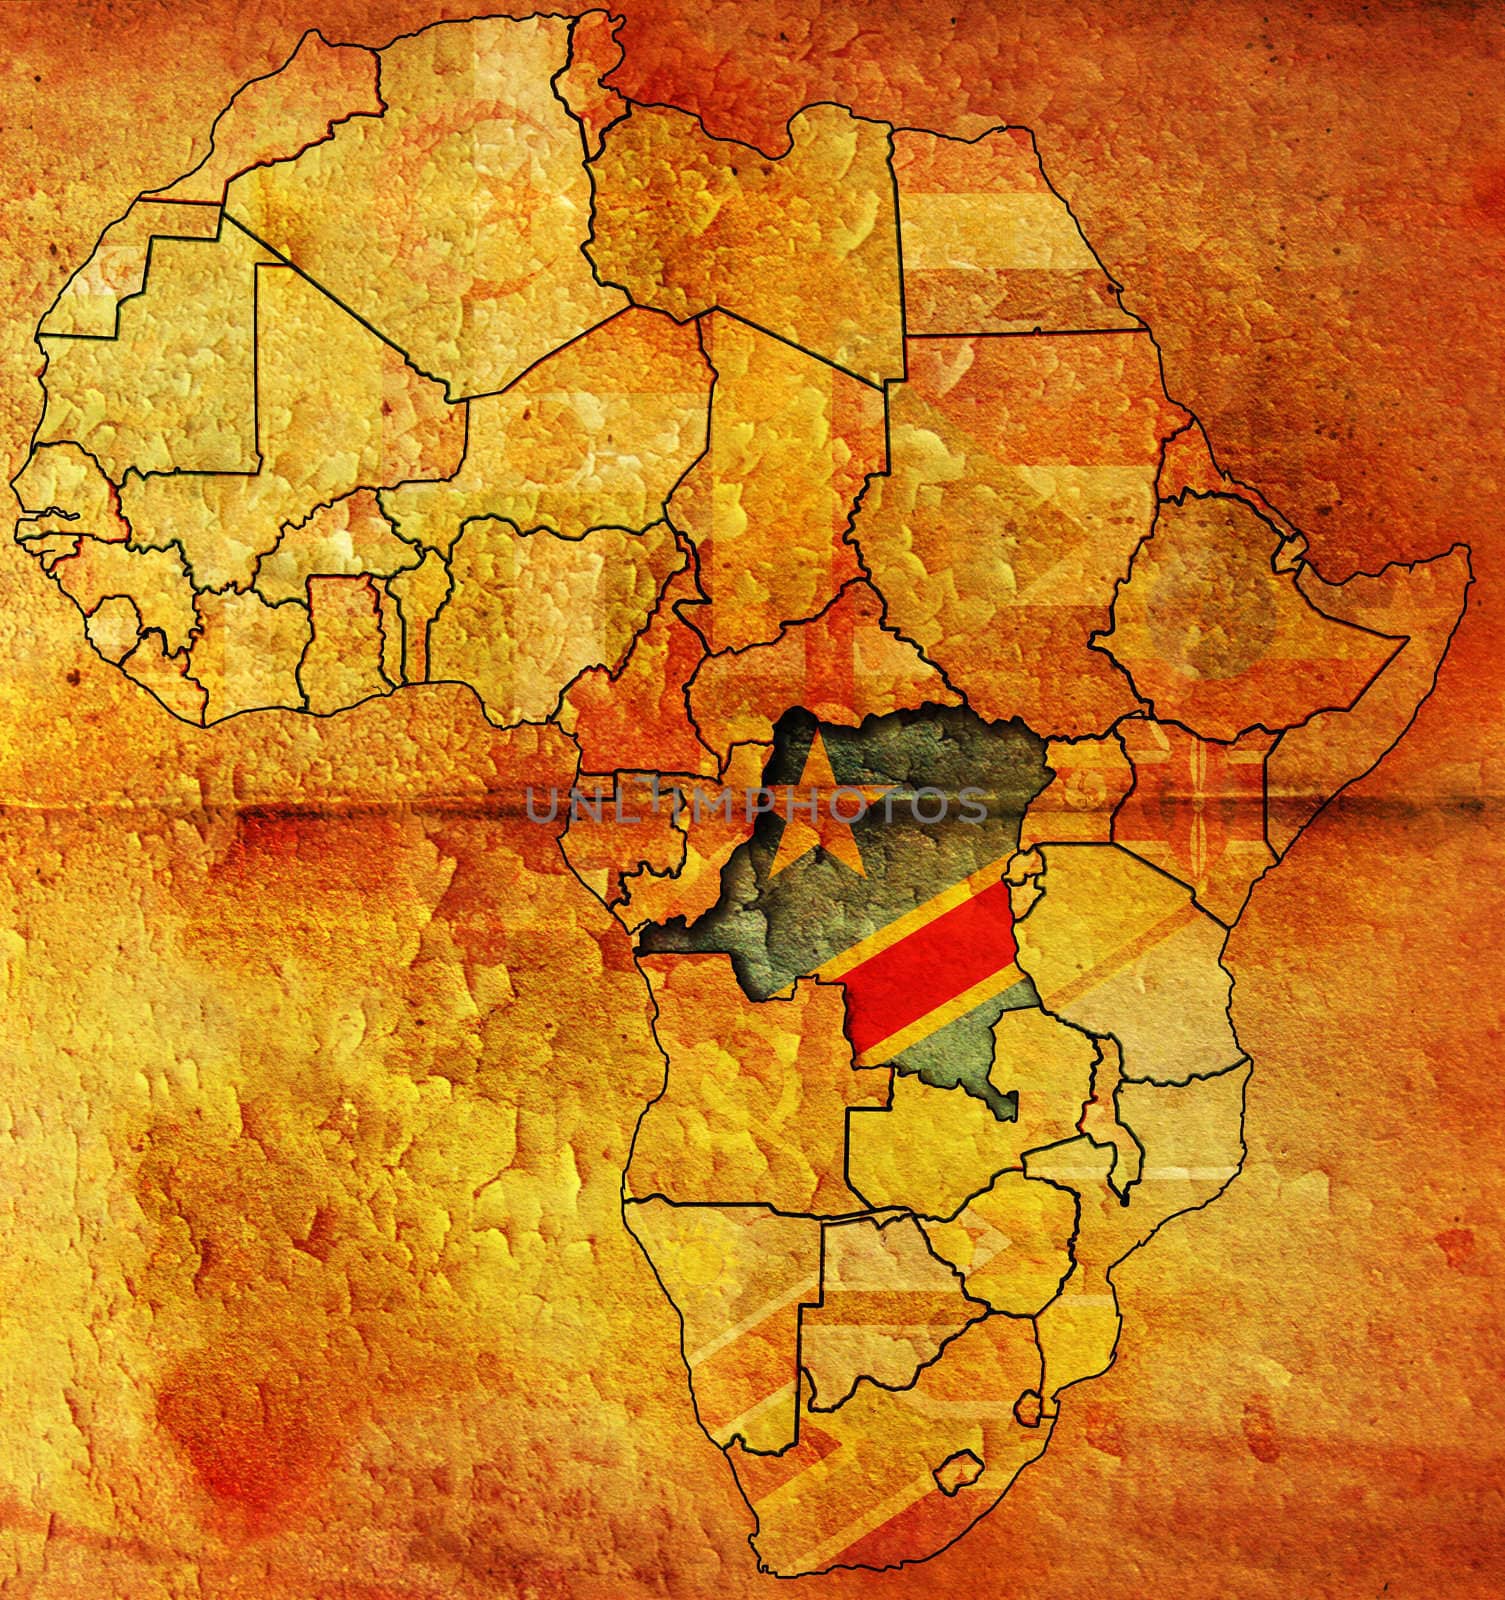 democratic republic of congo of africa map